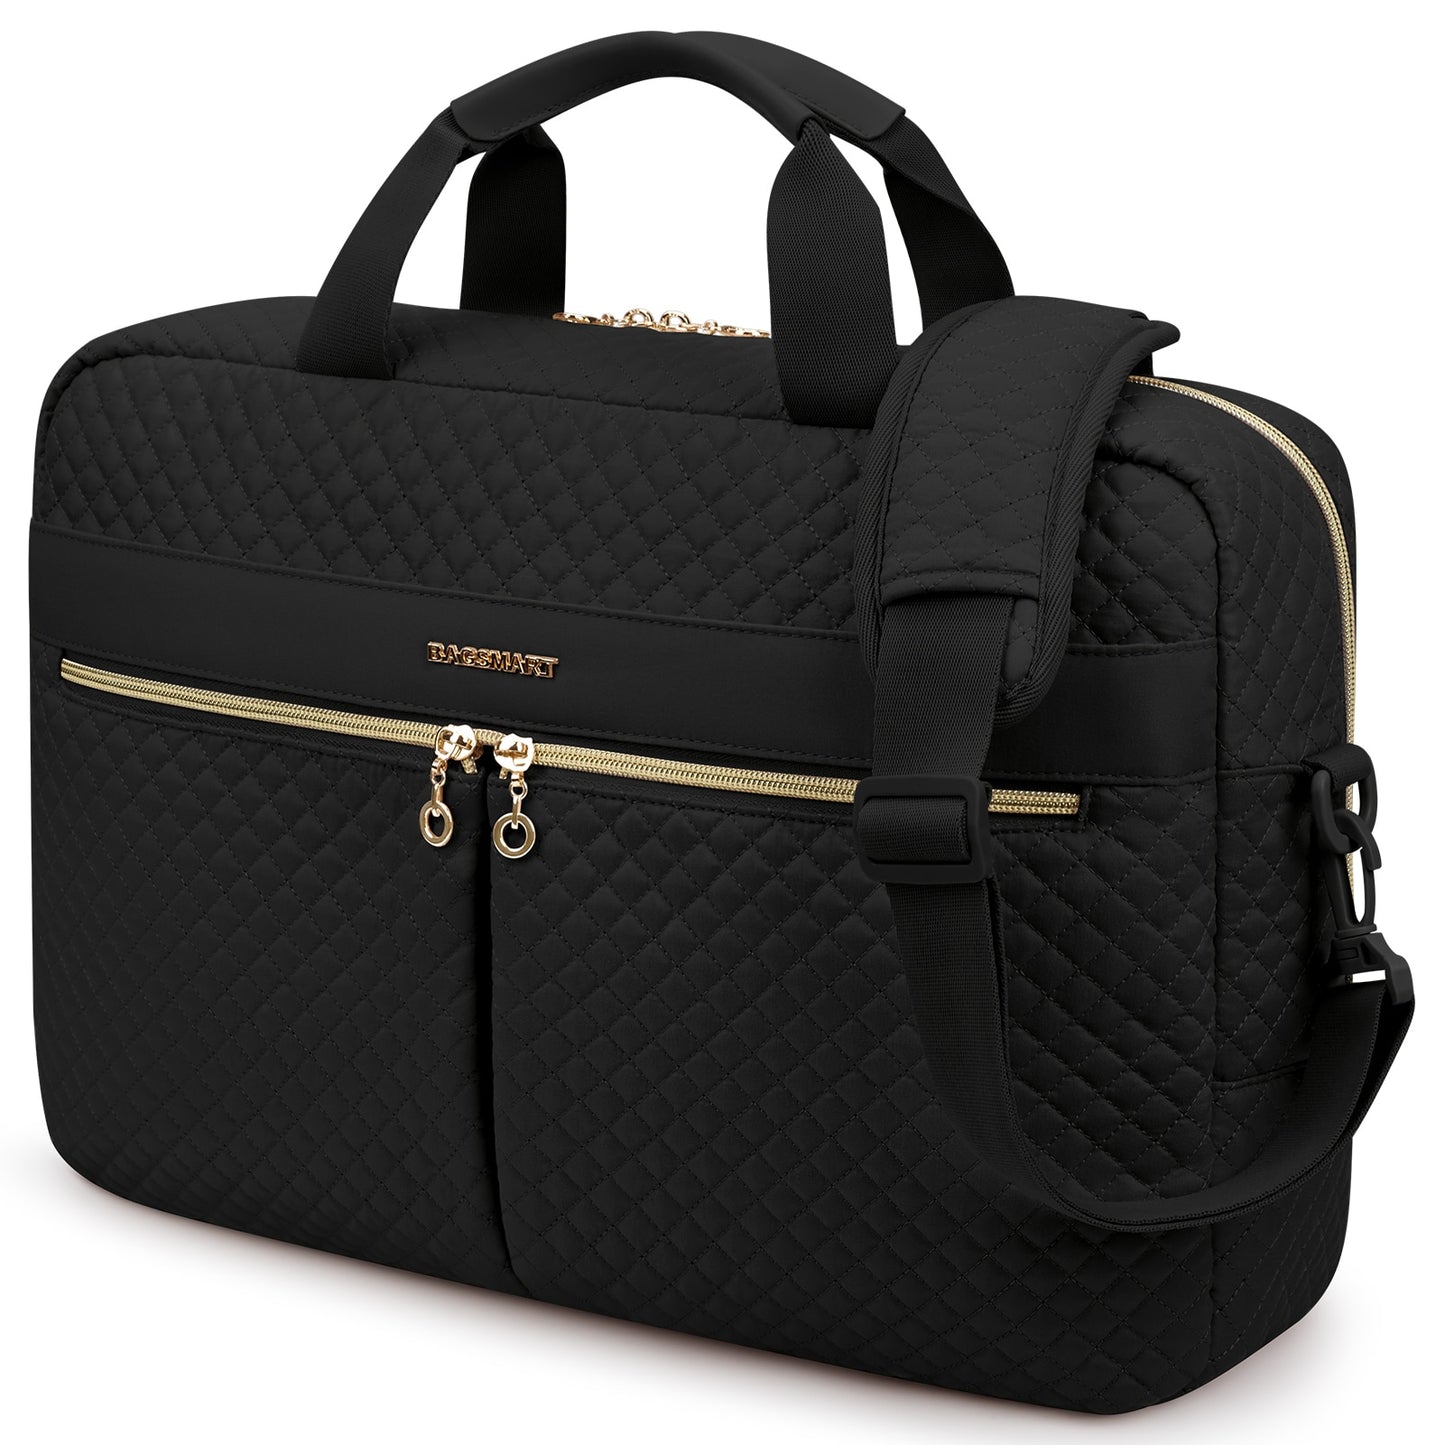 Luxury Padded Laptop Shoulder Bag